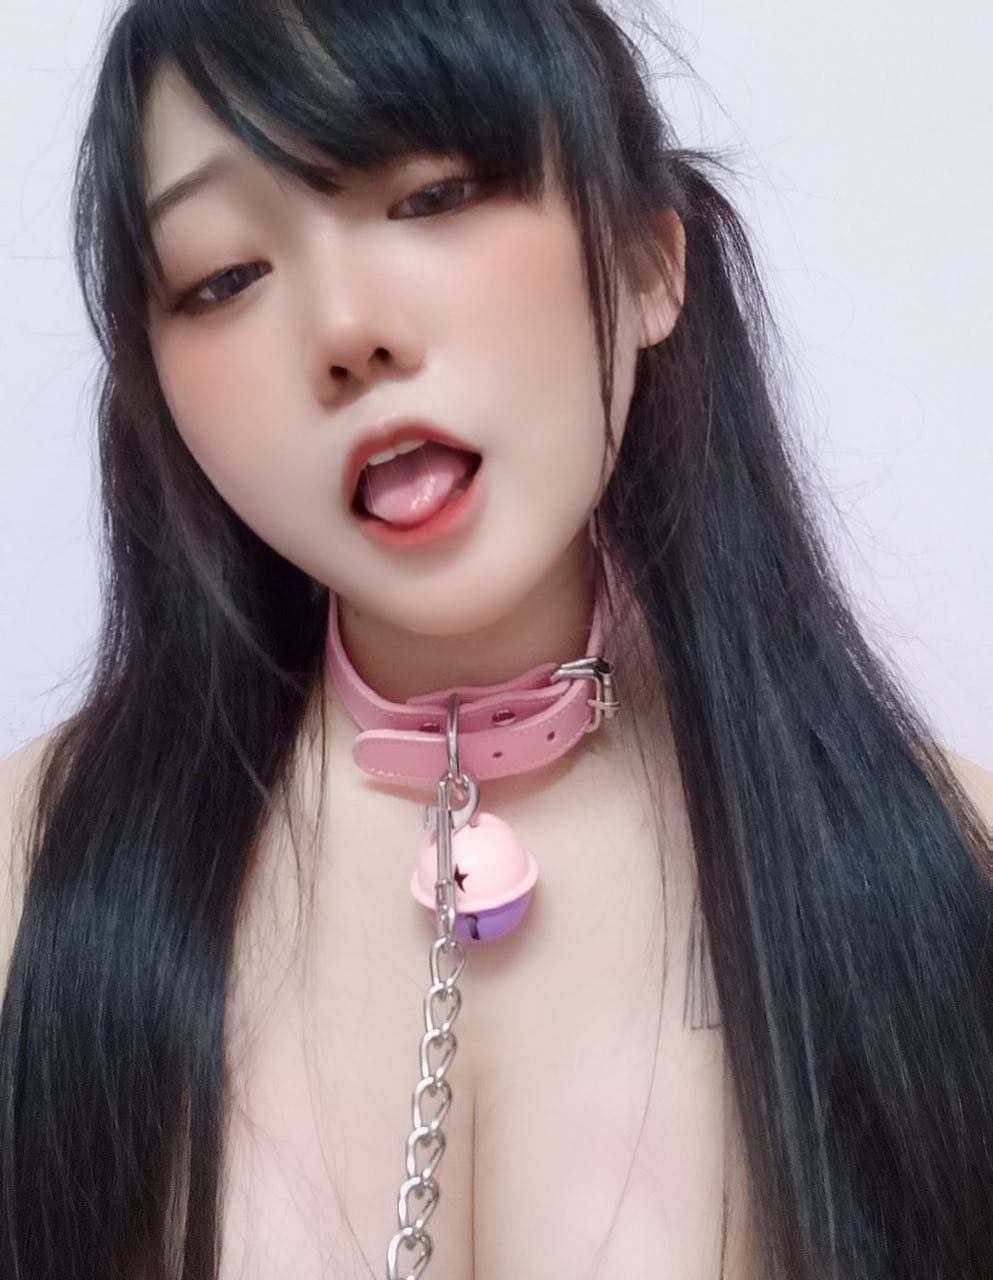 BDSM 台灣